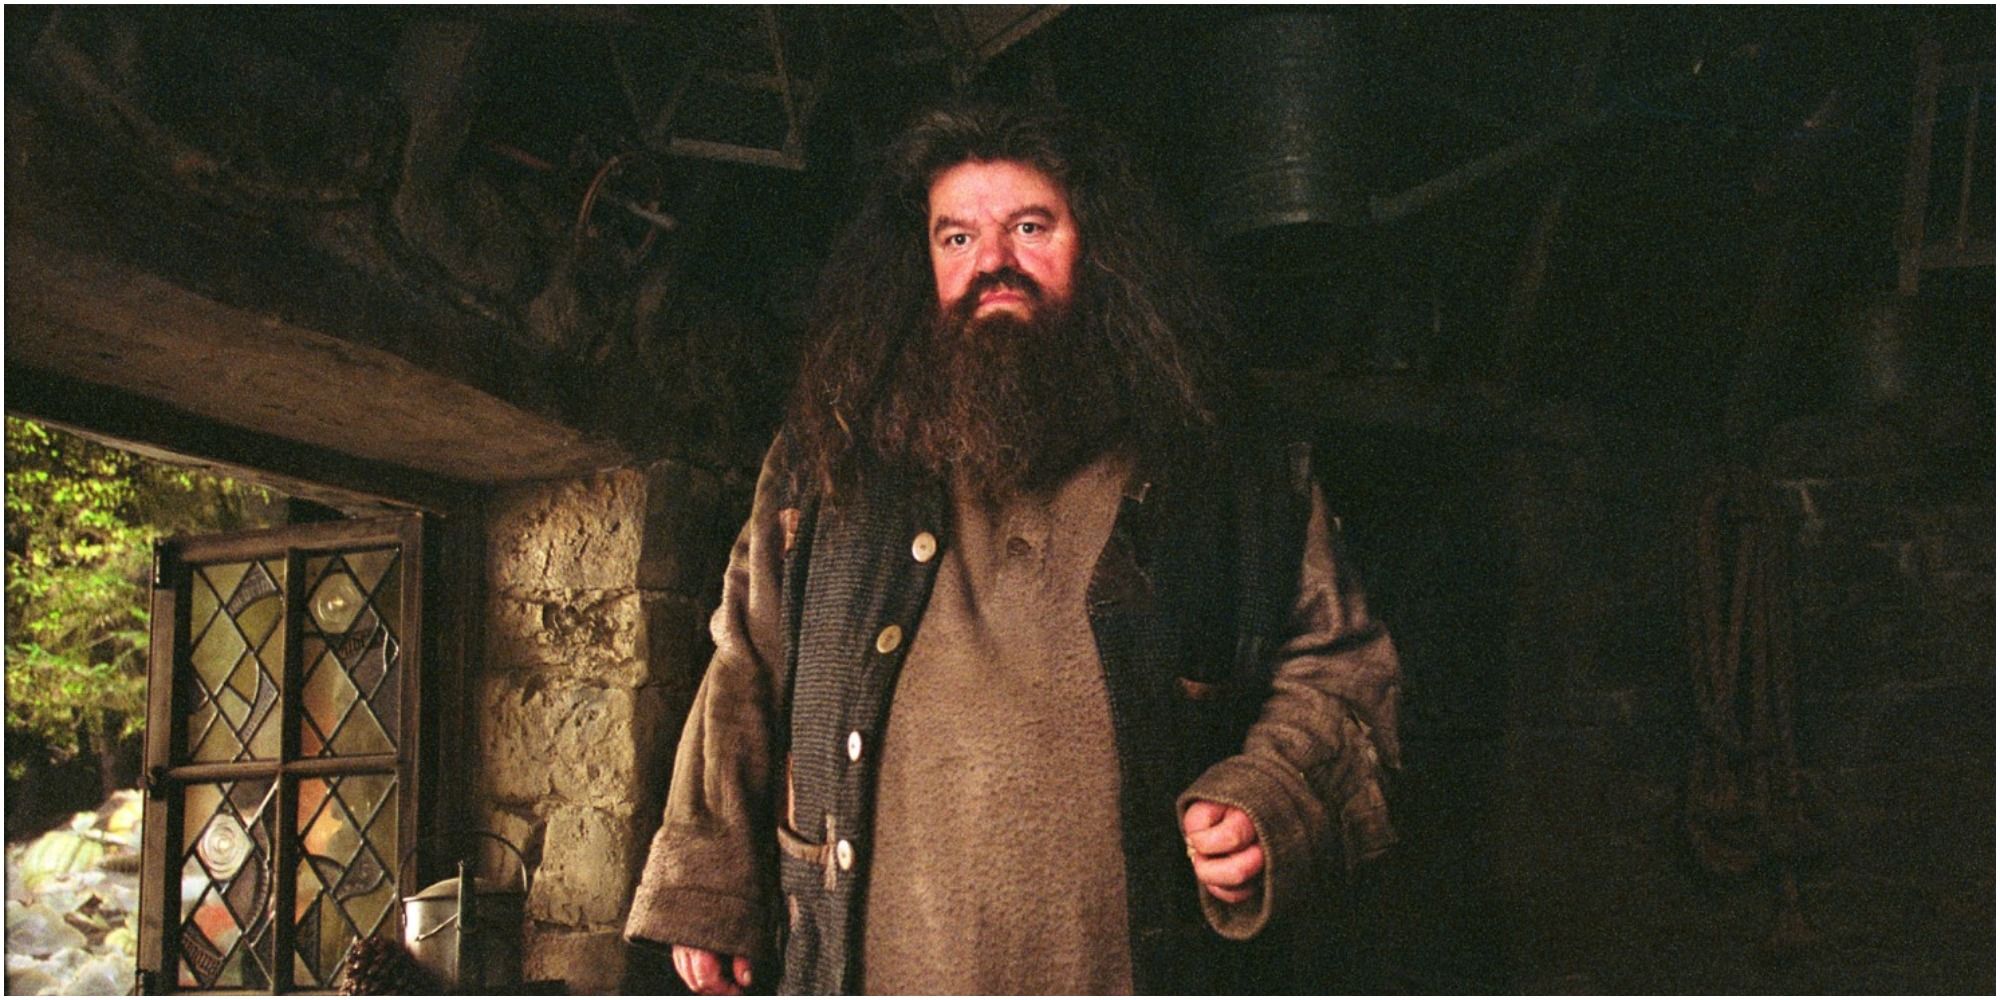 ISFP Hagrid